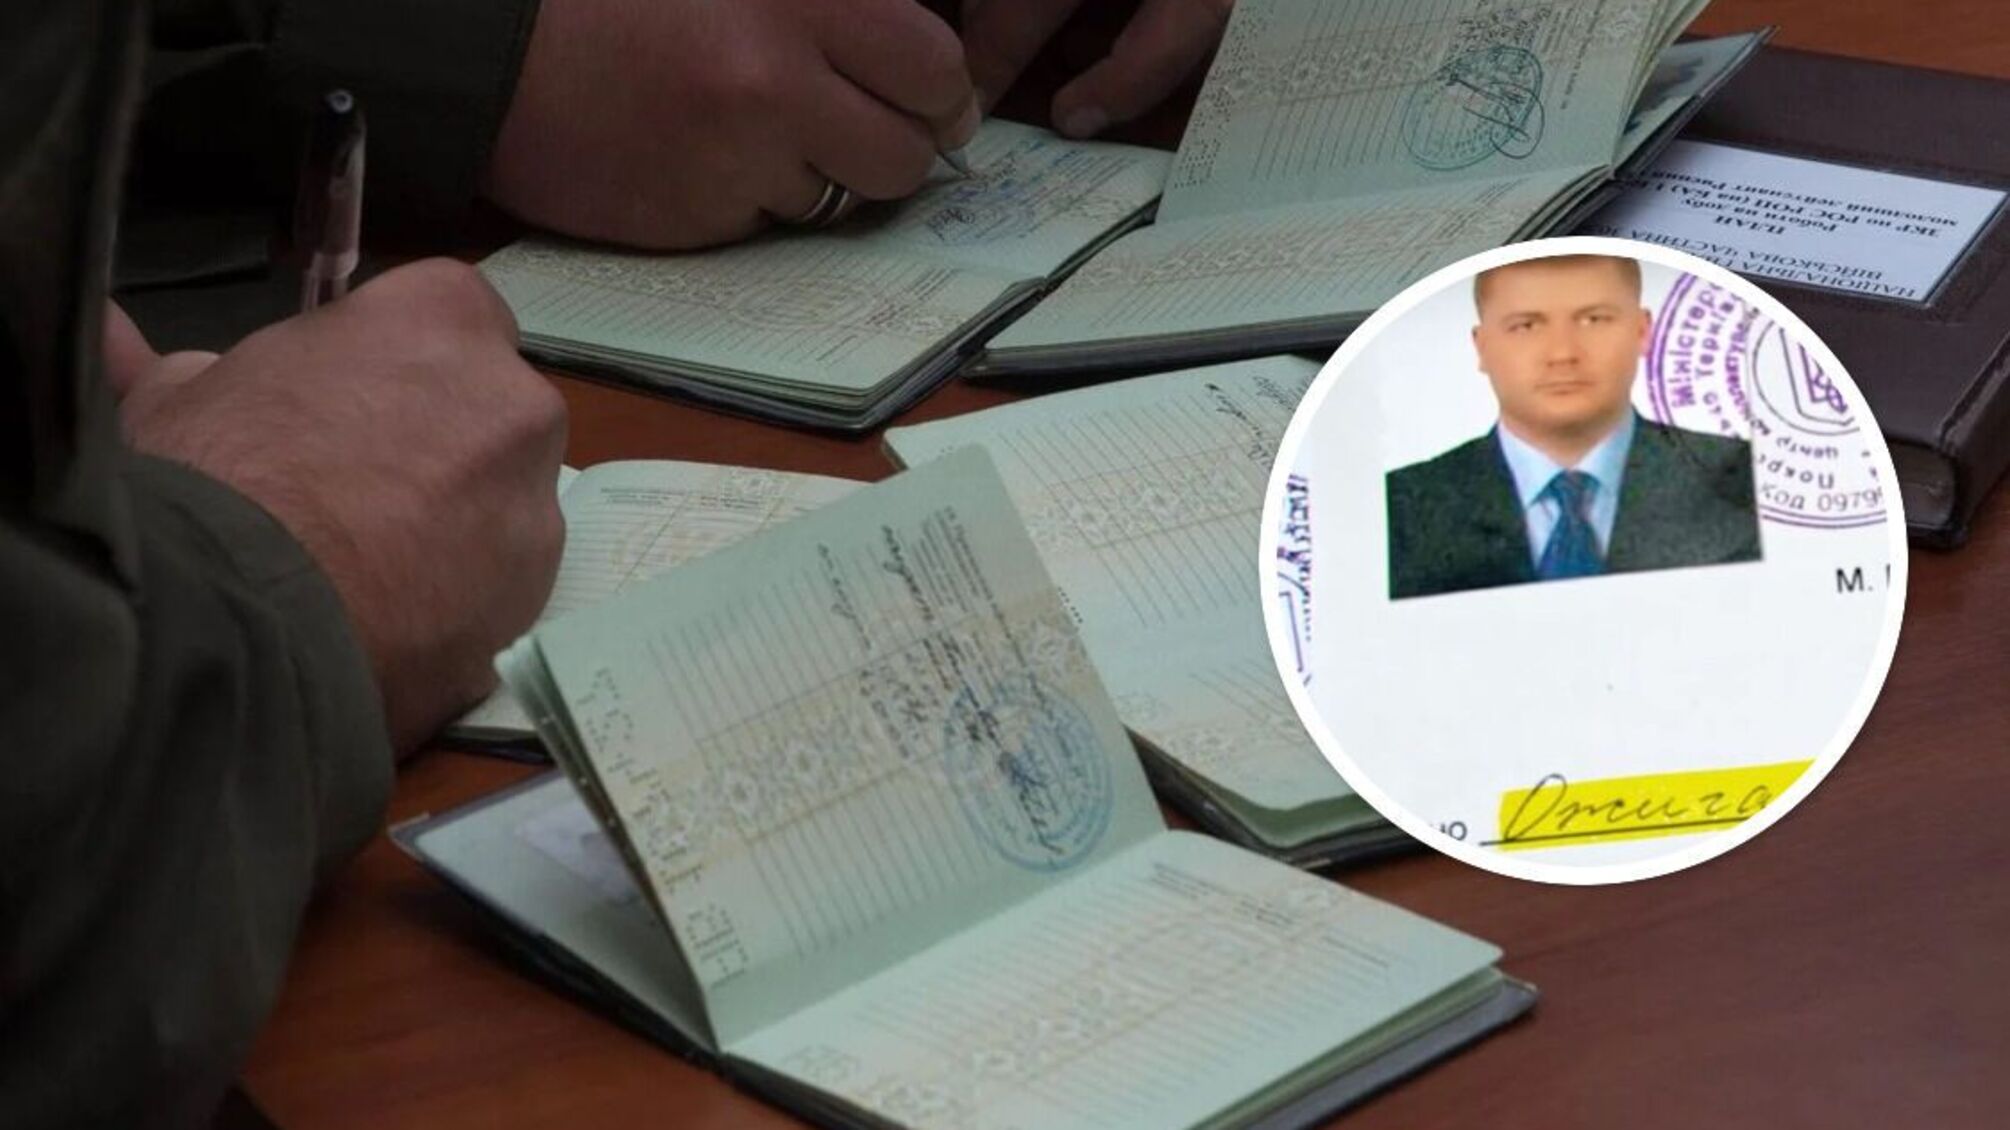 Лидер криворожской банды 'Двадцатовские' Ожиганов получил 'белый билет': правоохранители расследуют законность документа